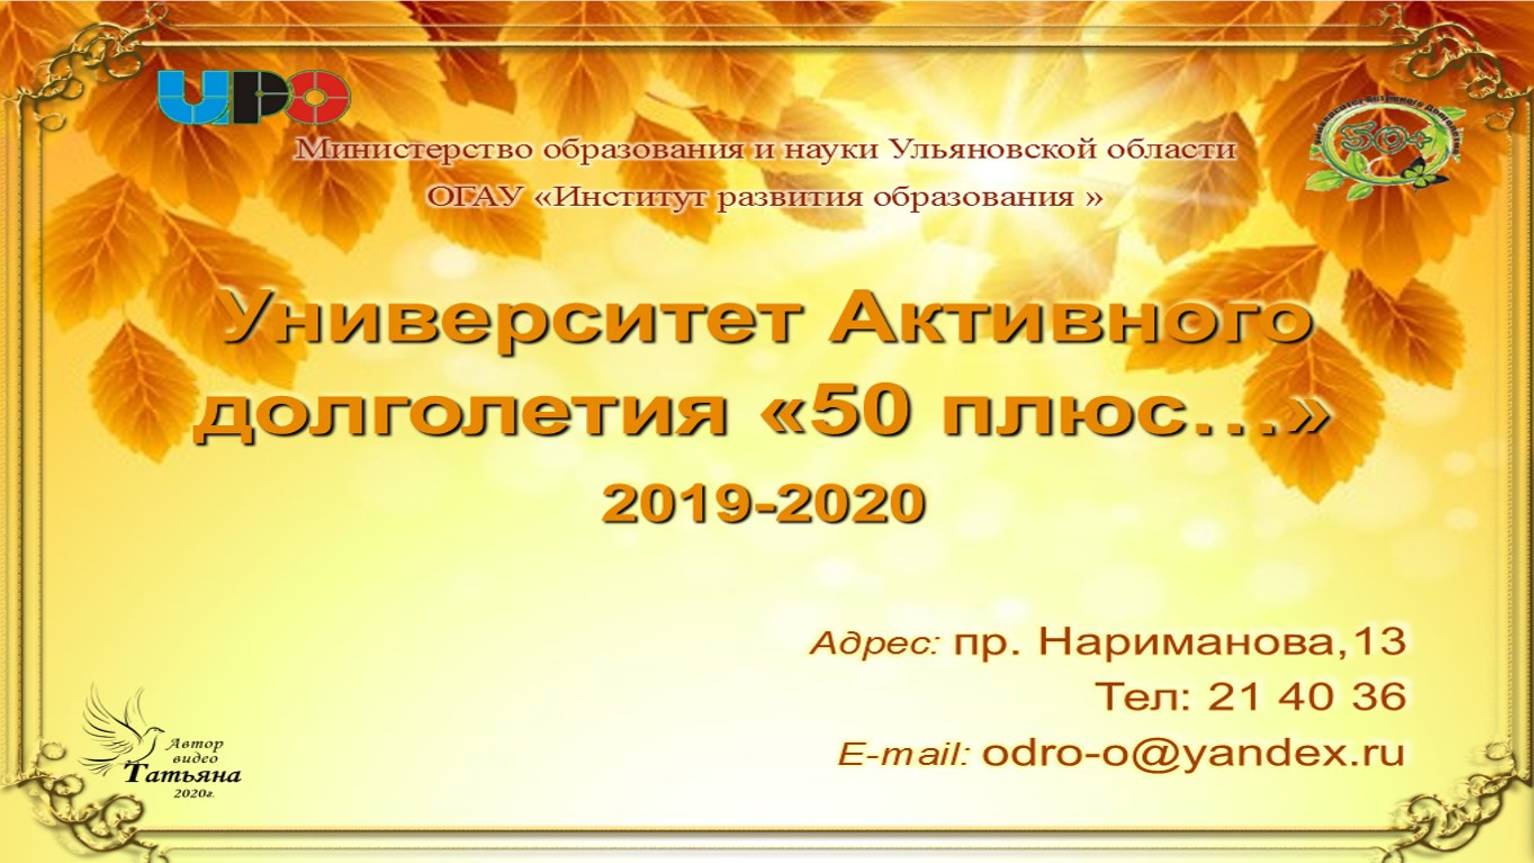 Университет активного долголетия "50 плюс...". 2019-2020